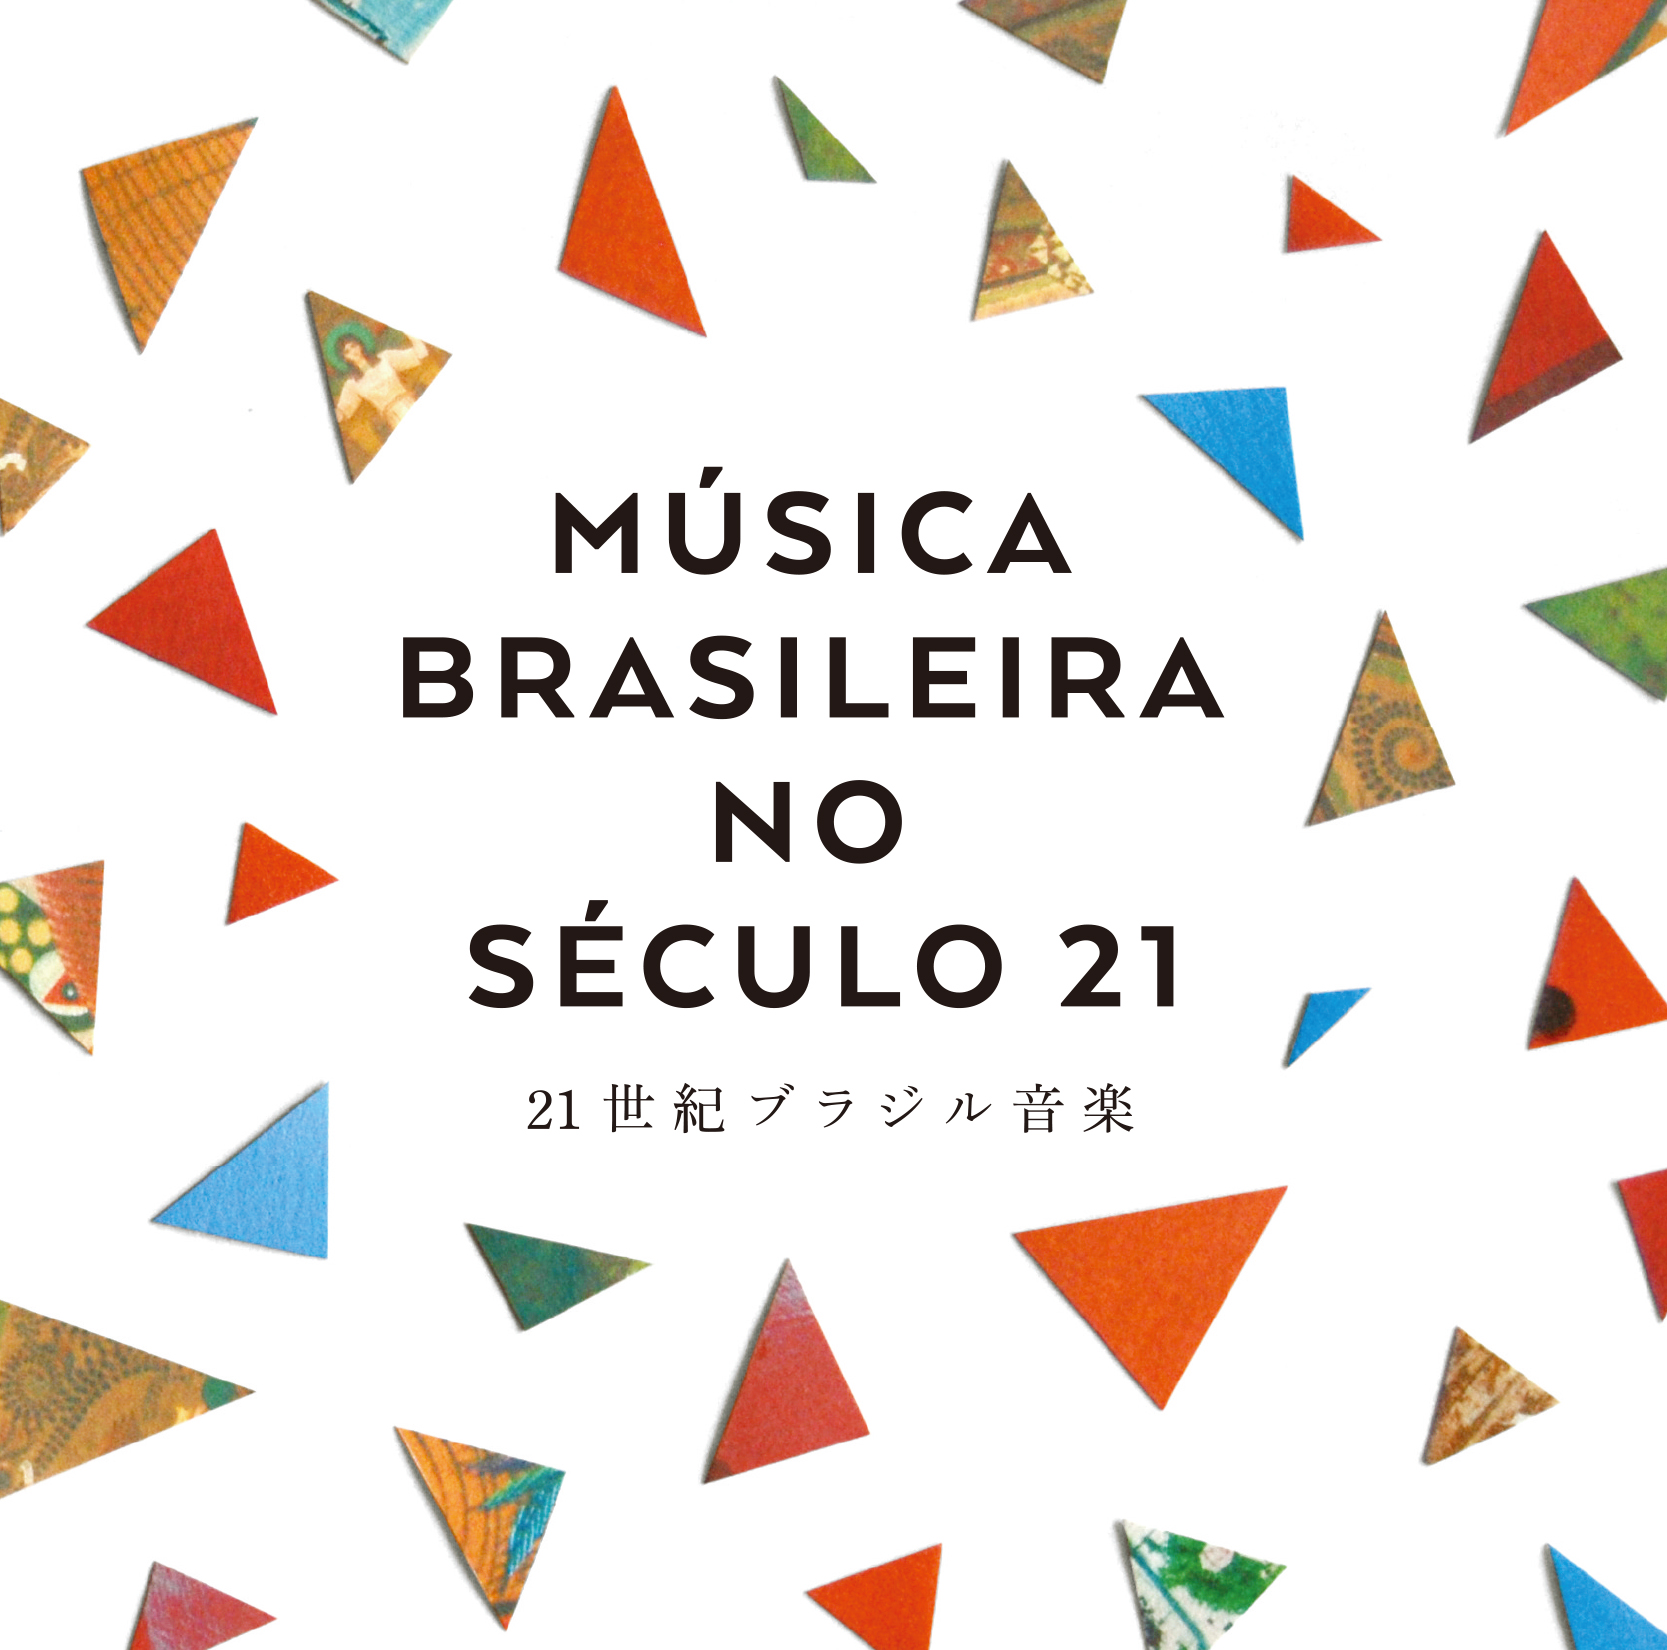 Musica Brasileira no Seculo 21 ～21世紀ブラジル音楽～